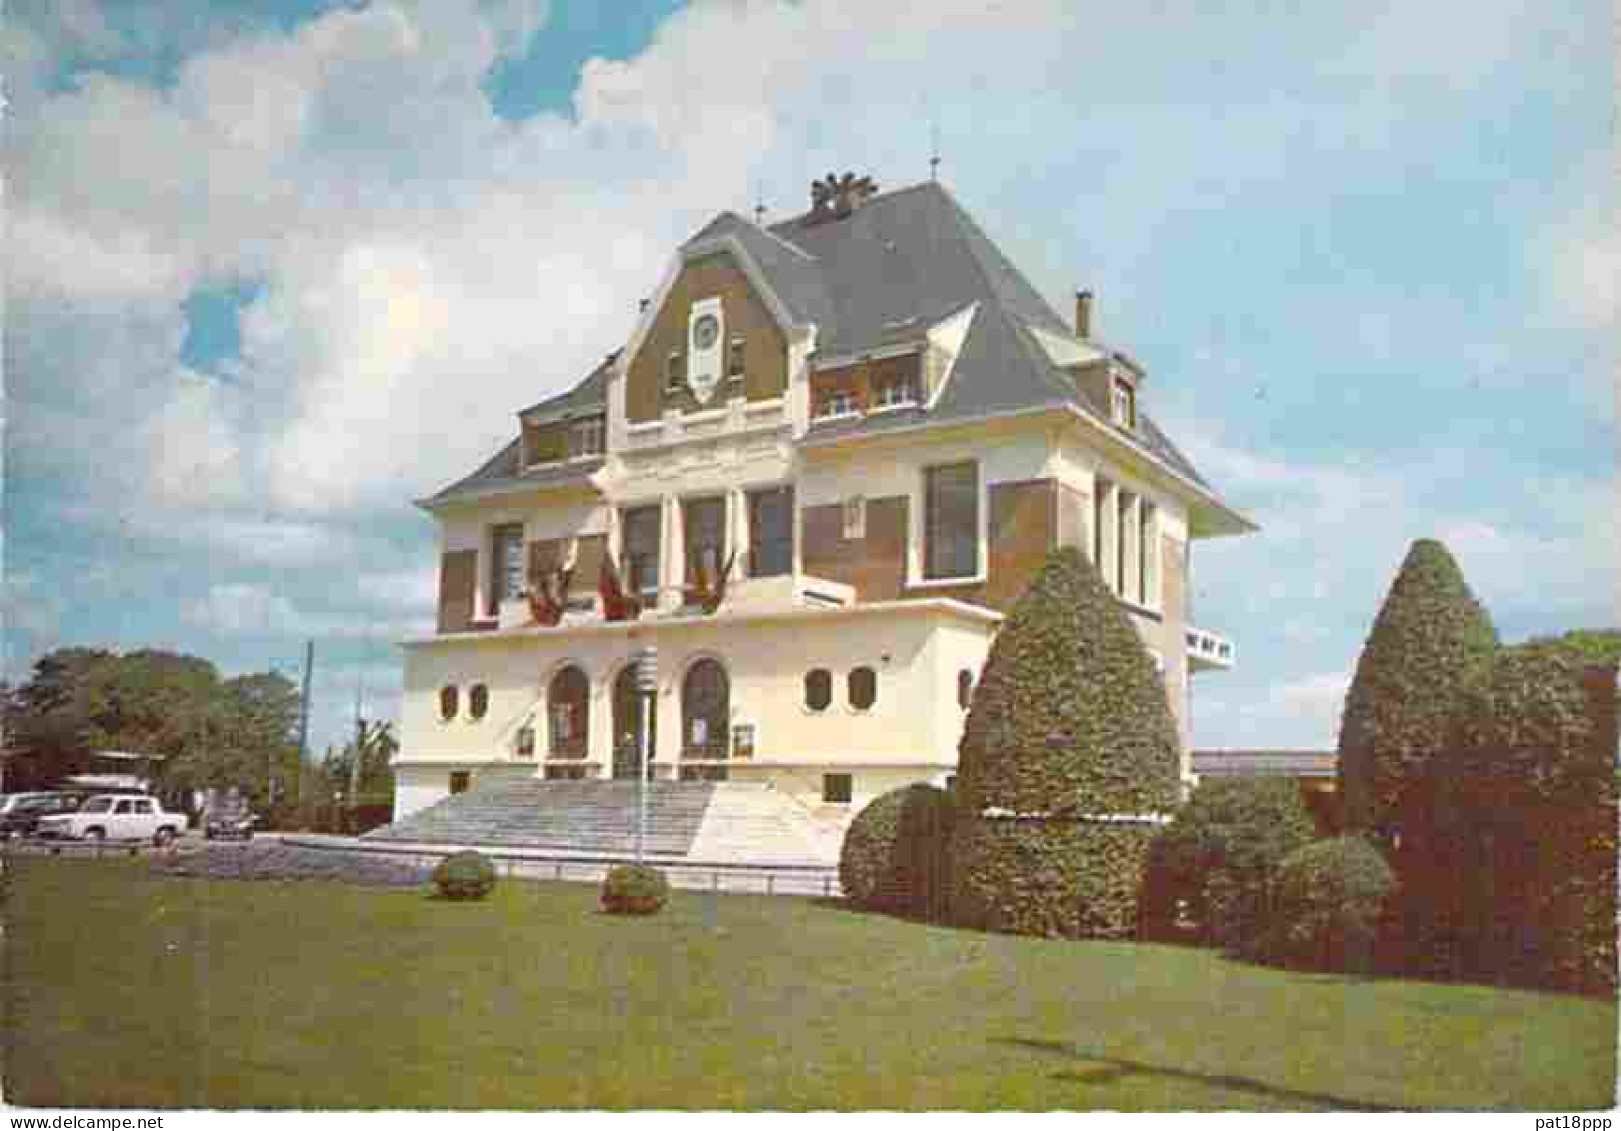 Lot de 45 cartes de MAIRIE - HOTEL DE VILLE (Villes et Villages) FRANCE : 10 CPA + 5 CPSM PF + 30 CPSM-CPM (1960-90's)